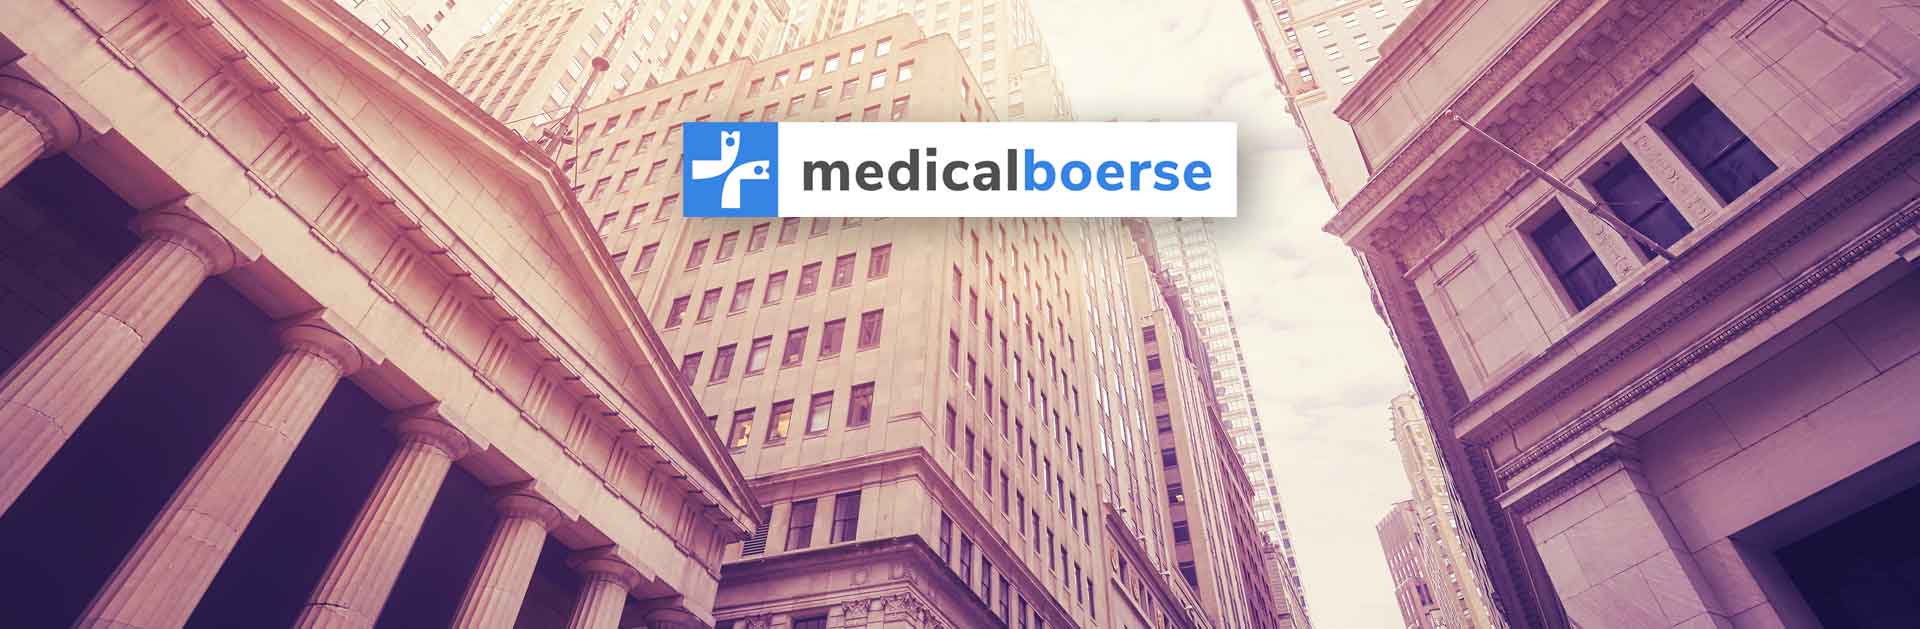 kostenlose Medicalbörse für Mediziner & Apotheker*innen